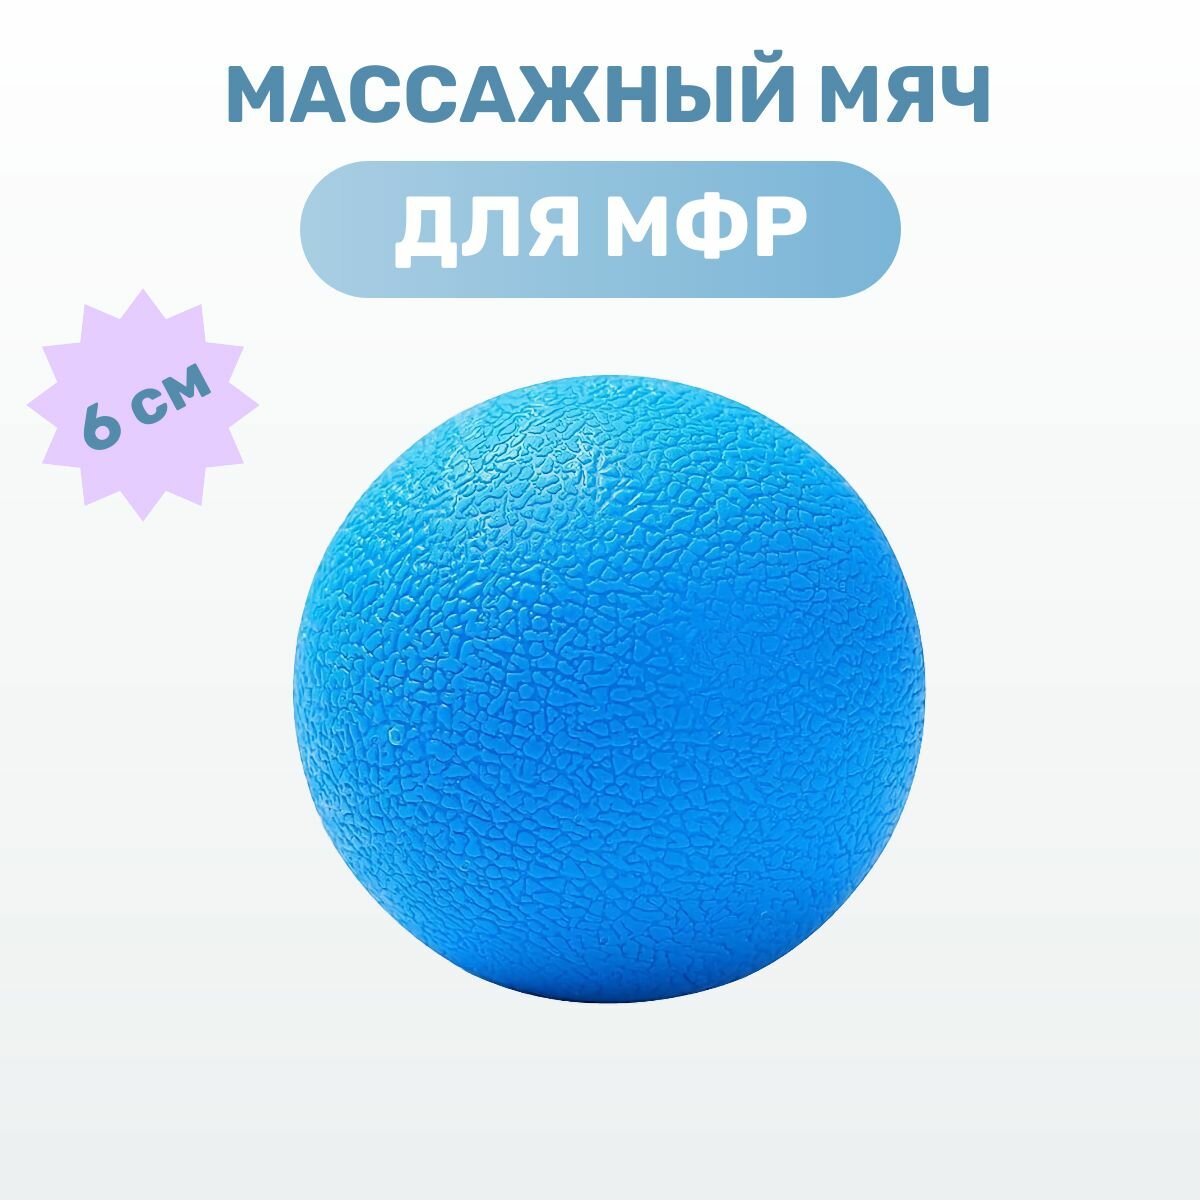 Массажный мяч МФР спортивный для расслабляющего массажа, диаметр 6,2 см, цвет синий